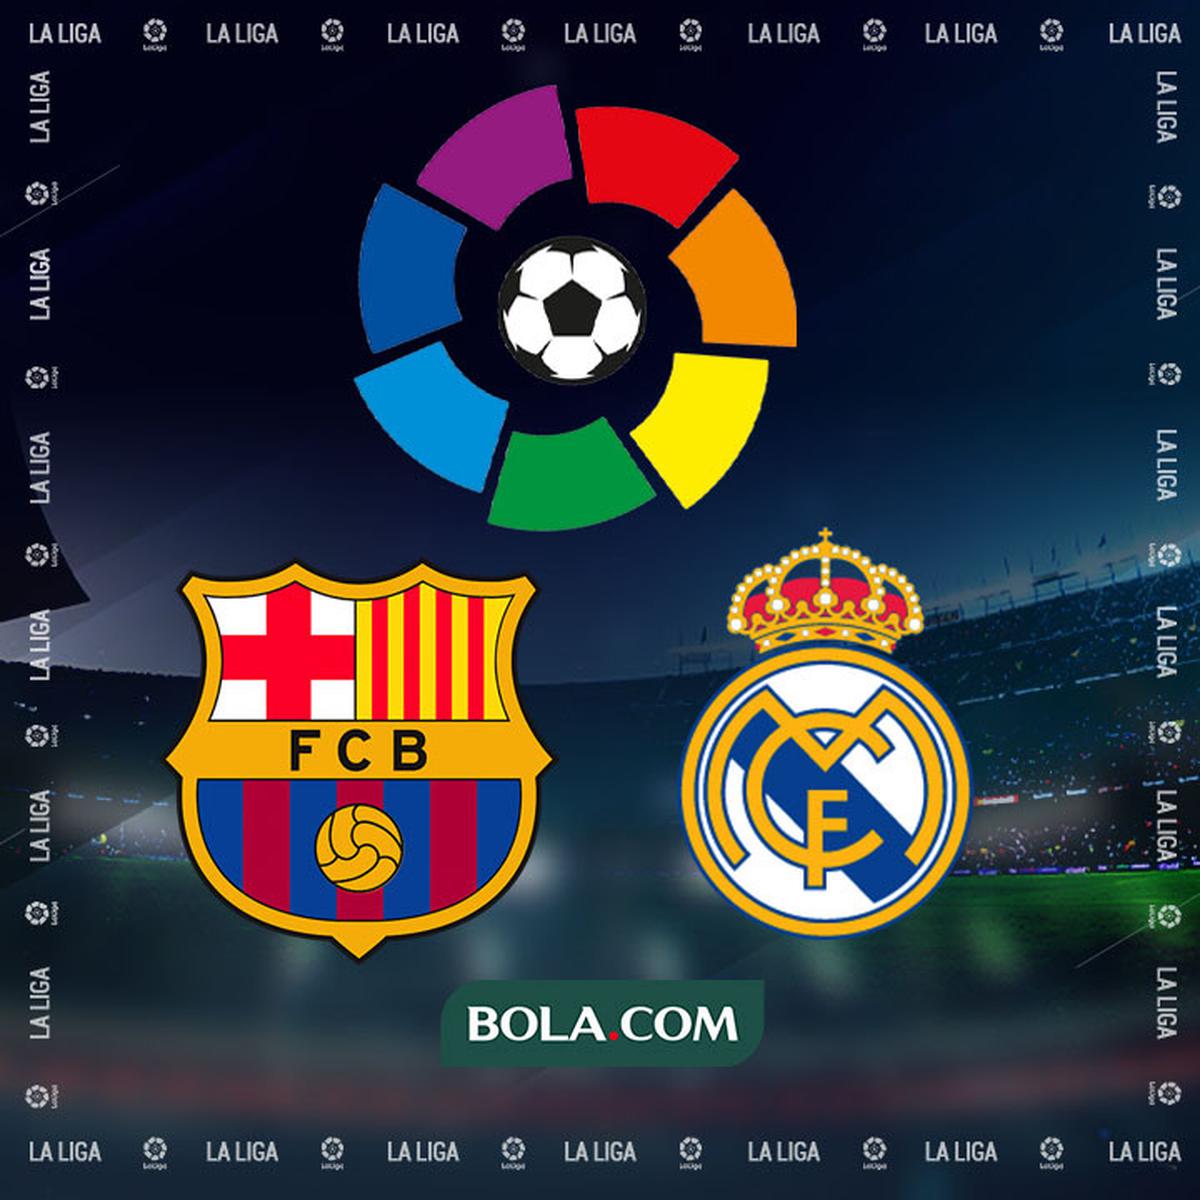 Jadwal Pertandingan Real Madrid Vs Barcelona di Laga Pramusim 2022 / 2023 -  Spanyol Bola.com